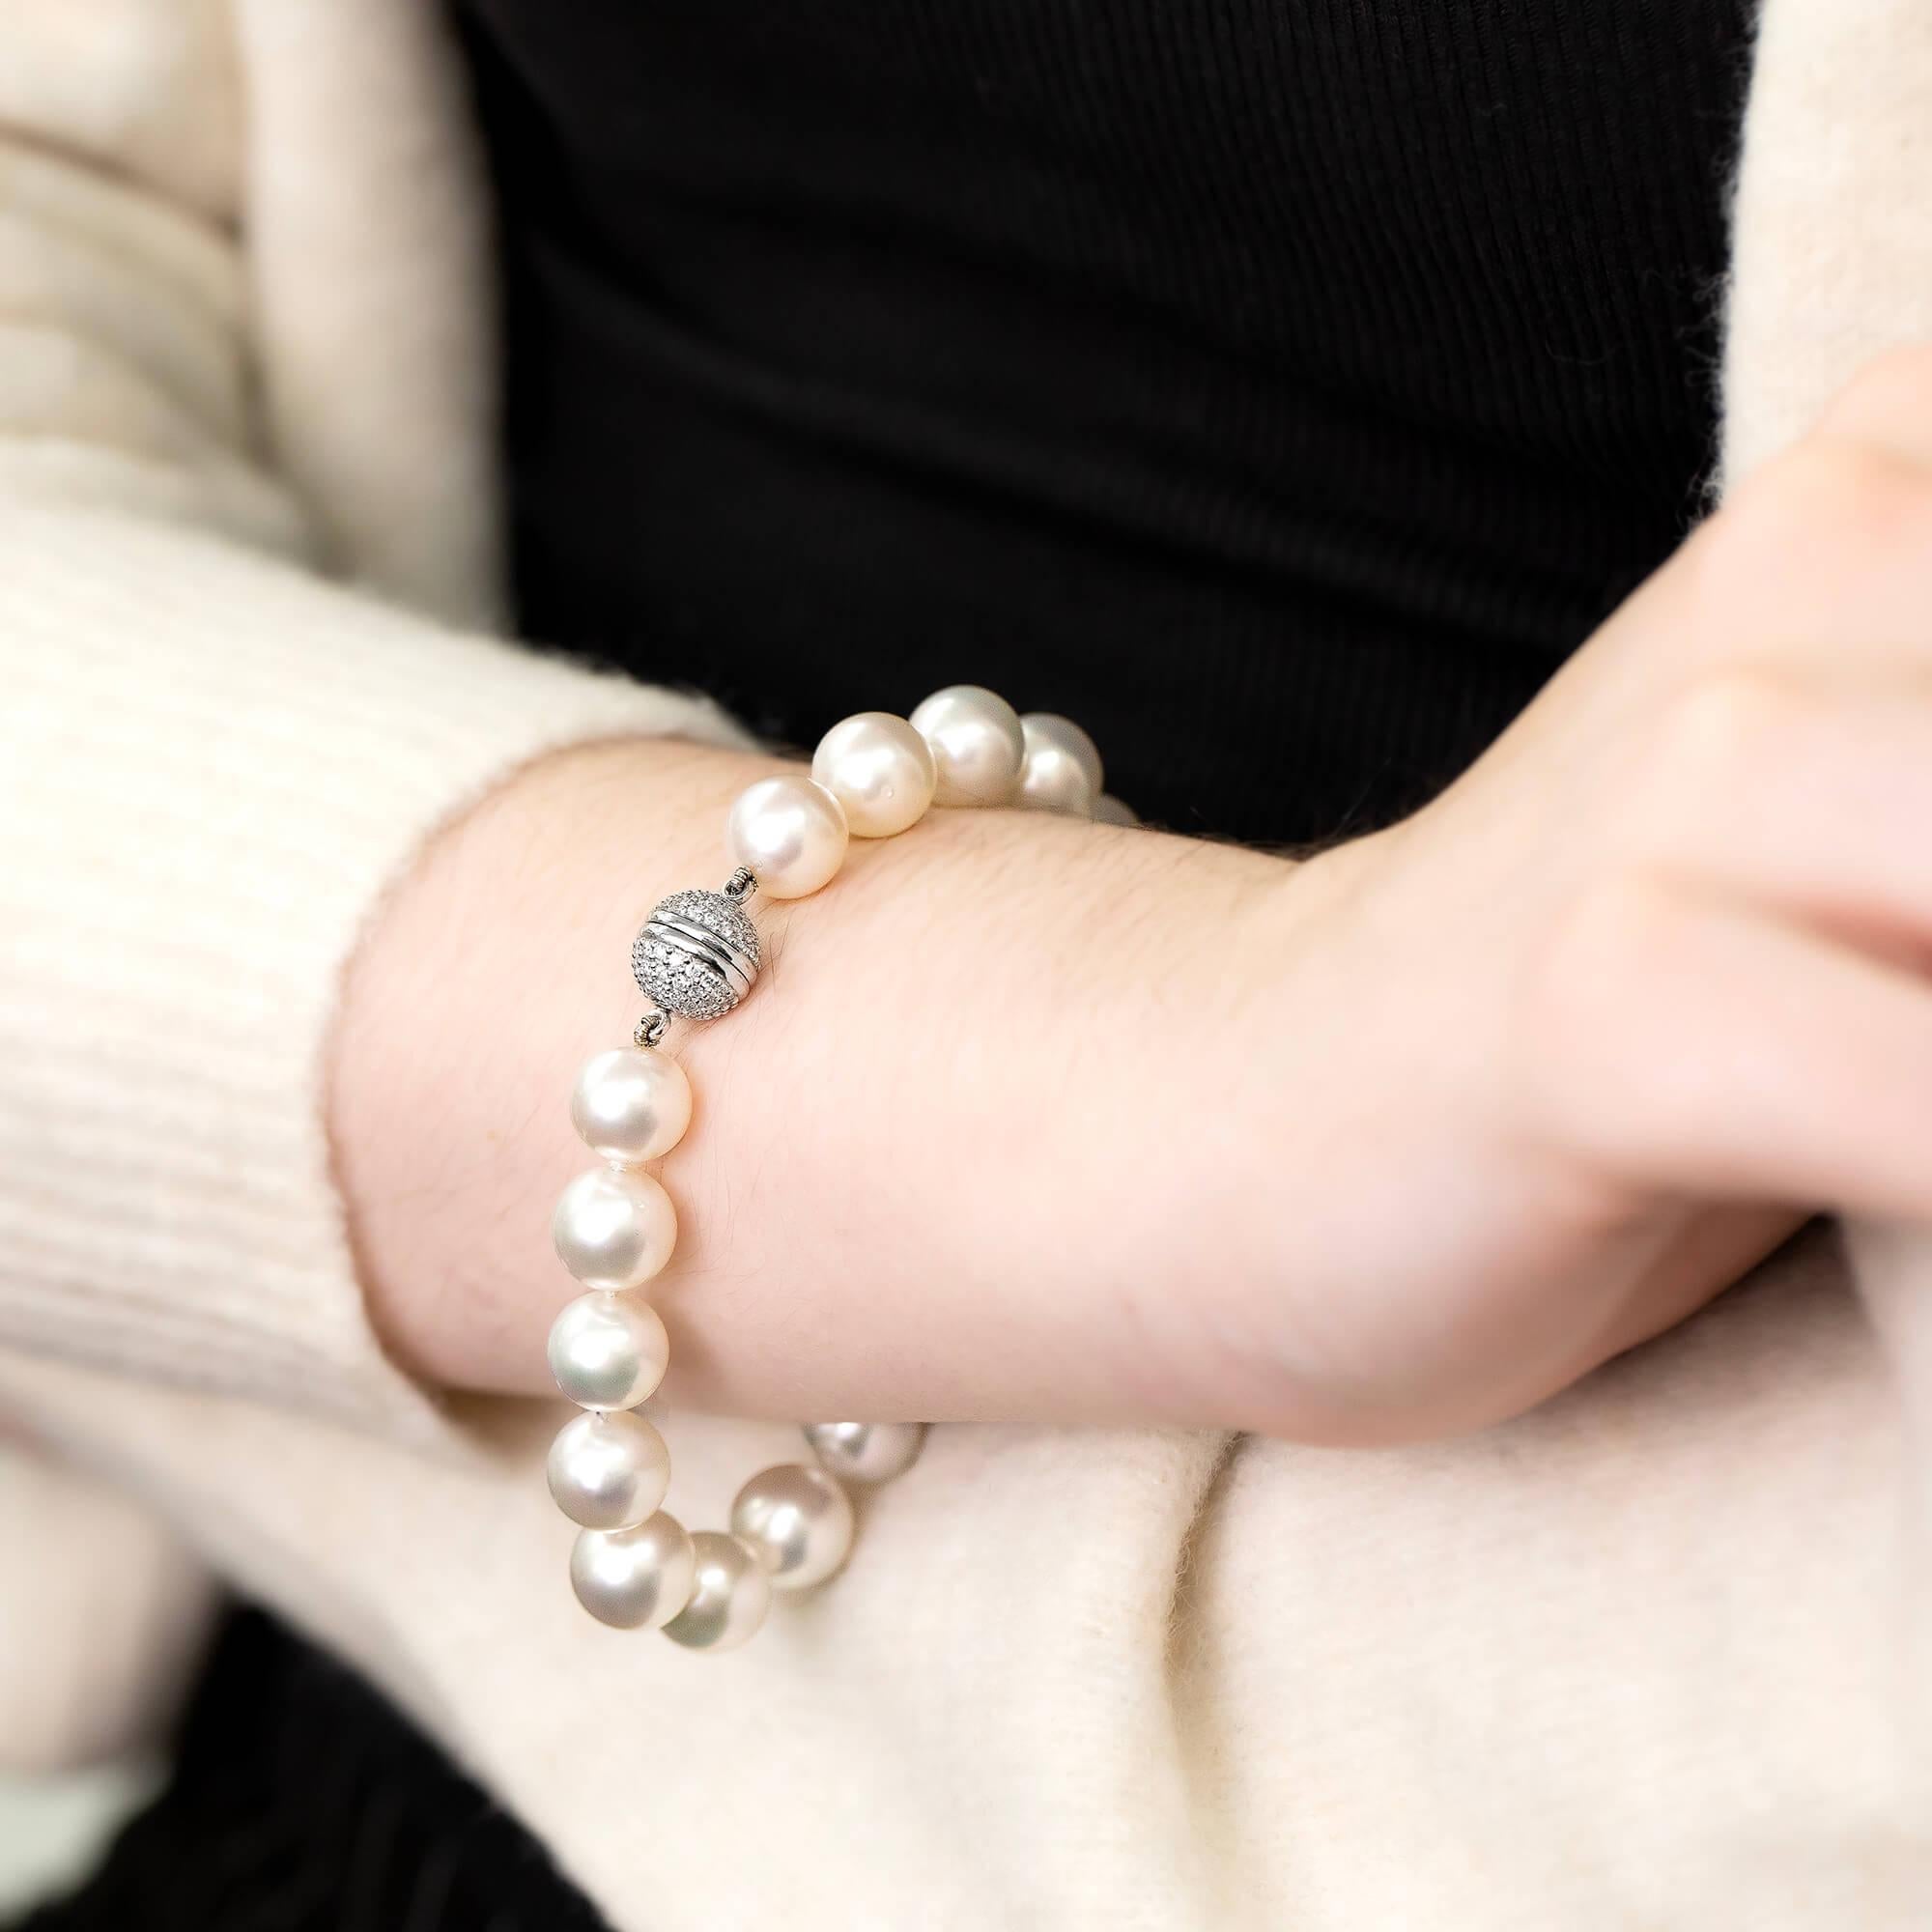 Modernes Südseeperlenarmband mit einzeln geknoteten Perlen und einem diamantbesetzten Verschluss. Die Schließe hat einen Gewindepfosten zum Einschrauben für sicheren Halt.

Edelstein: Siebzehn runde Südseeperlen (verjüngt von 9 mm - 10 mm